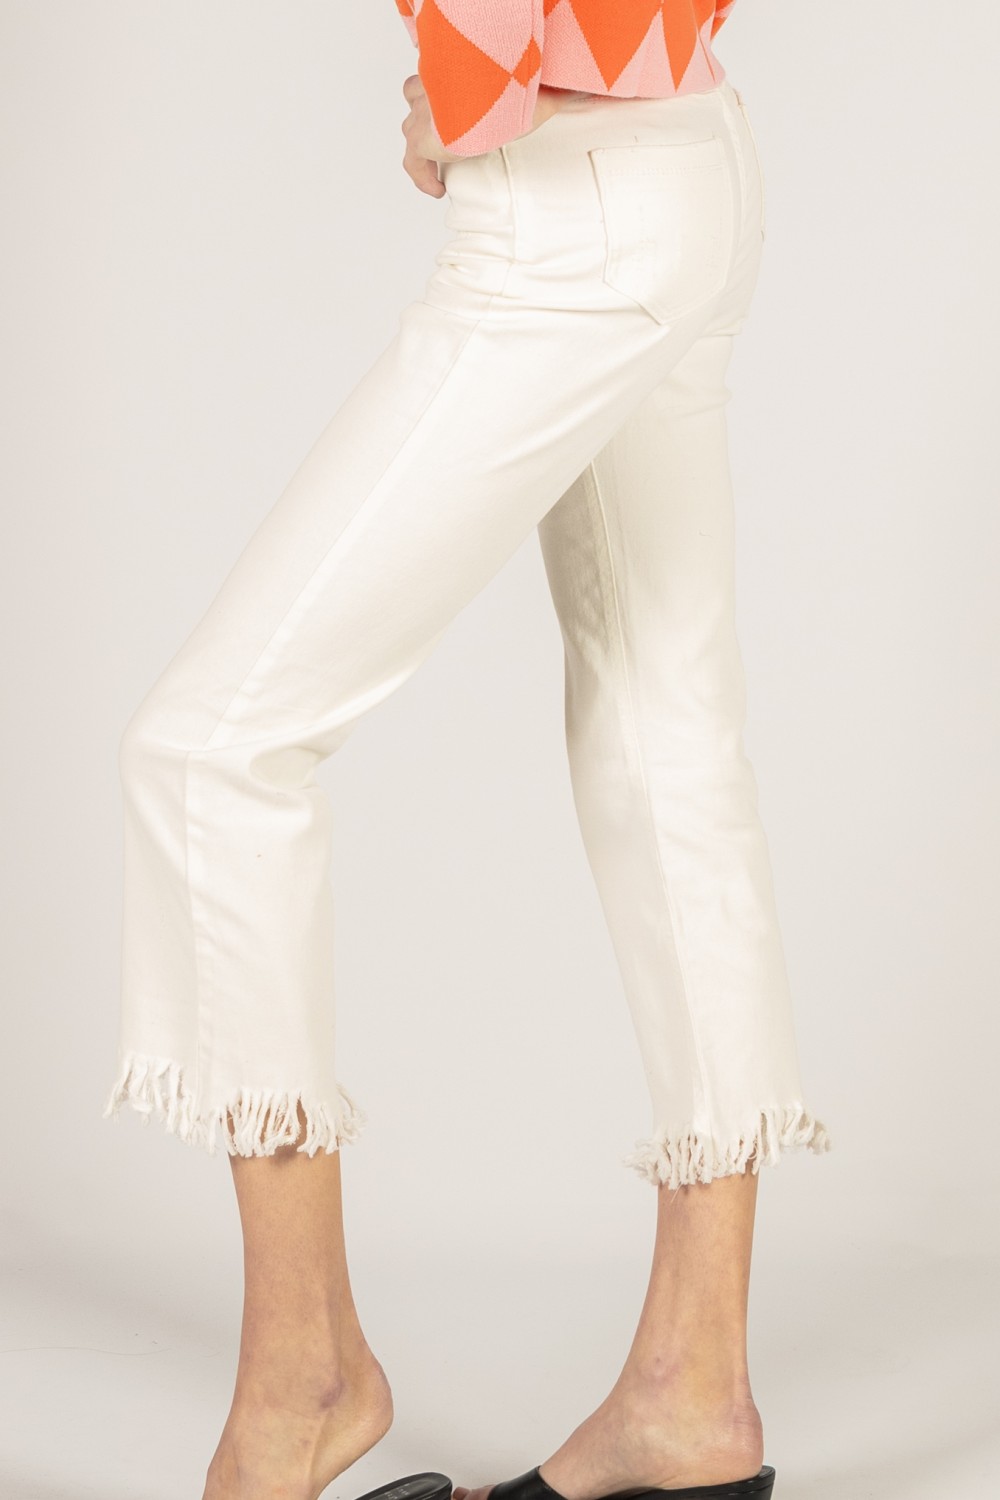 Unique Bargains Women's Plus Capri Frayed Hem Casual Denim Jeans -  Walmart.com